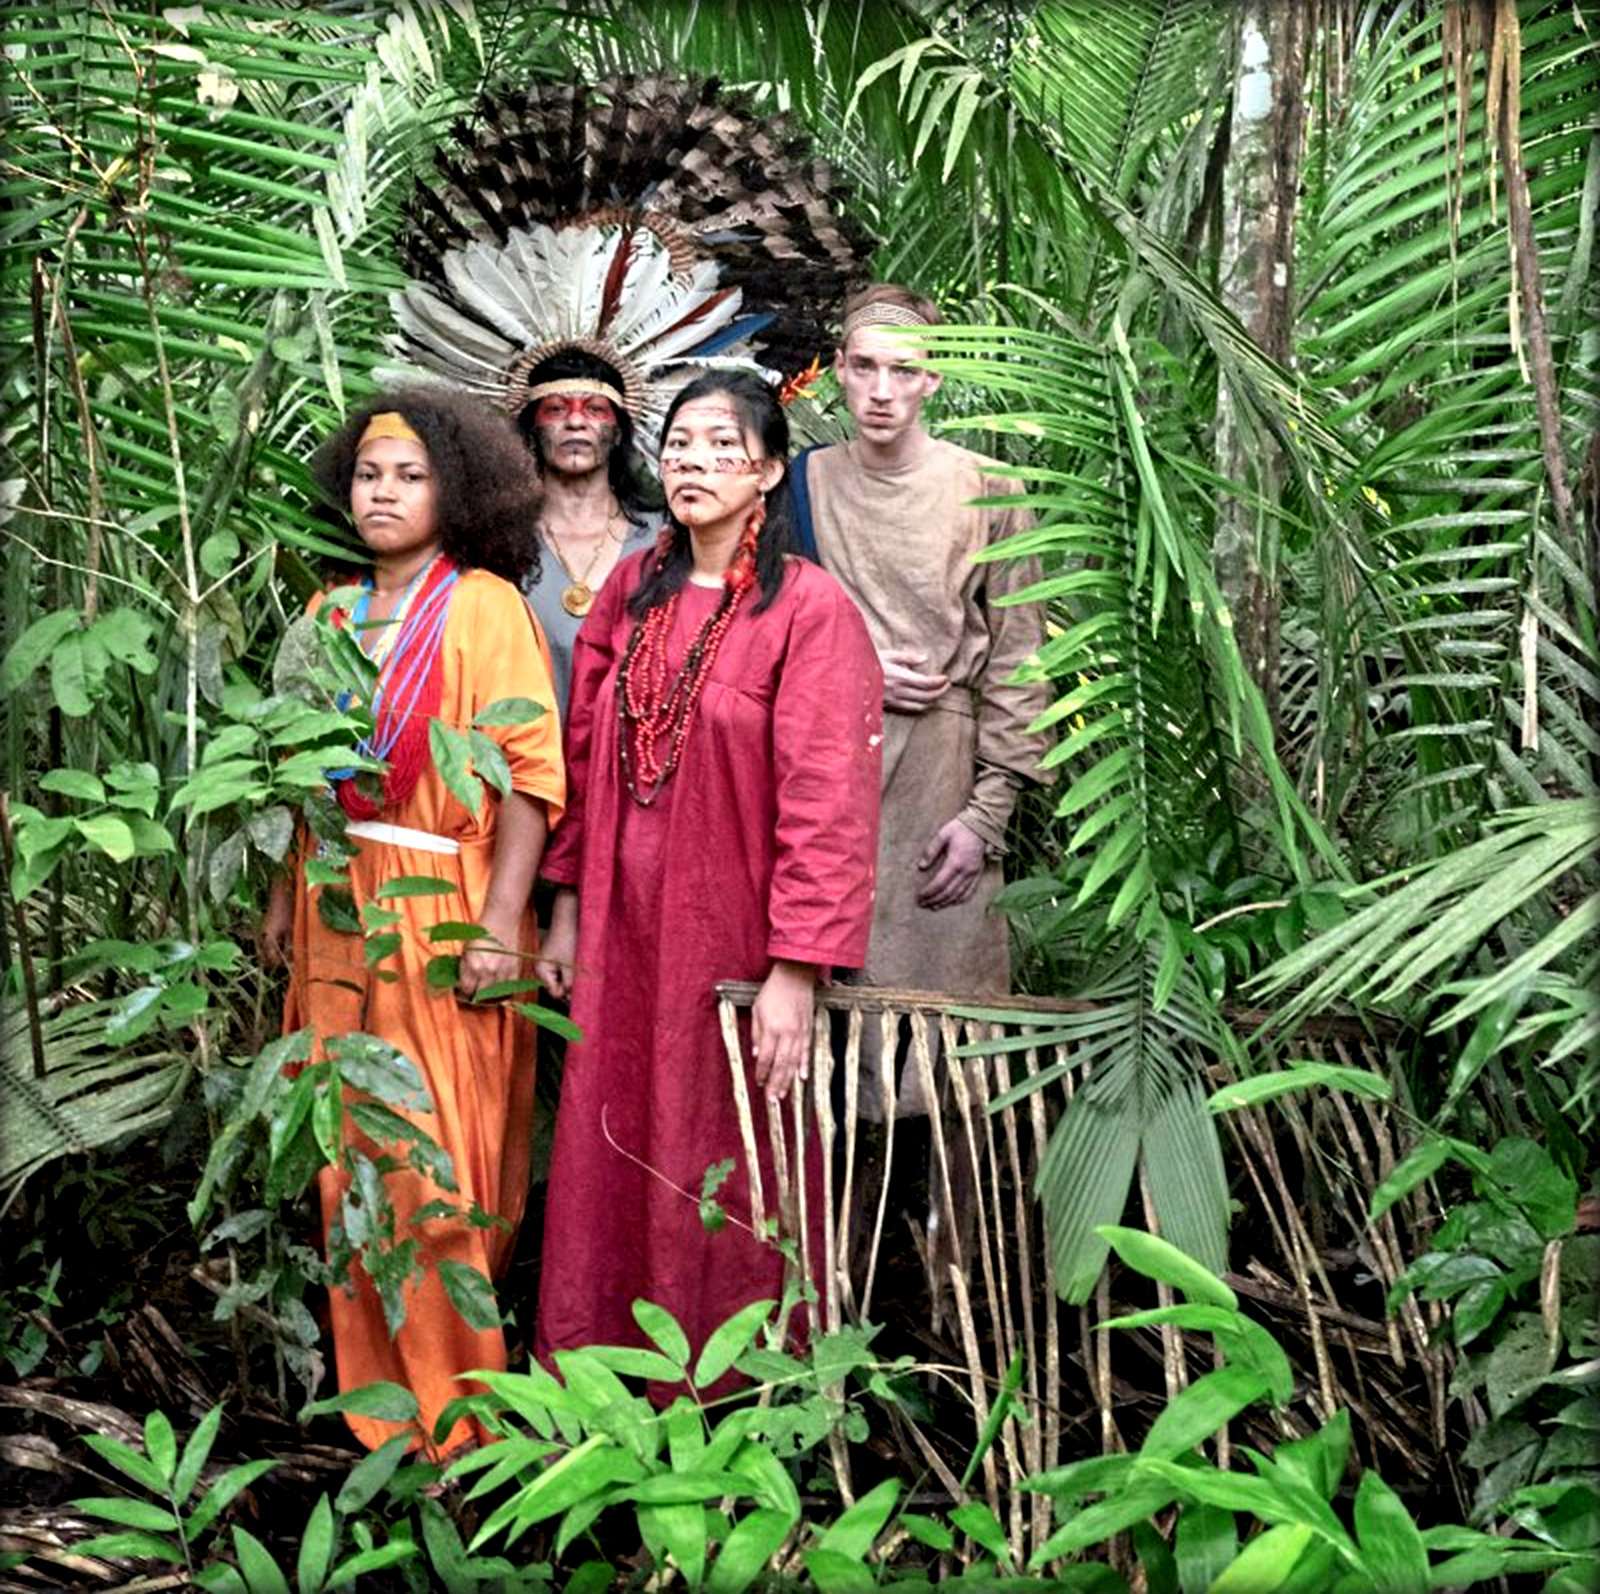 Kay Sara : αυτόχθονας του Αμαζονίου, ακτιβίστρια και ηθοποιός.